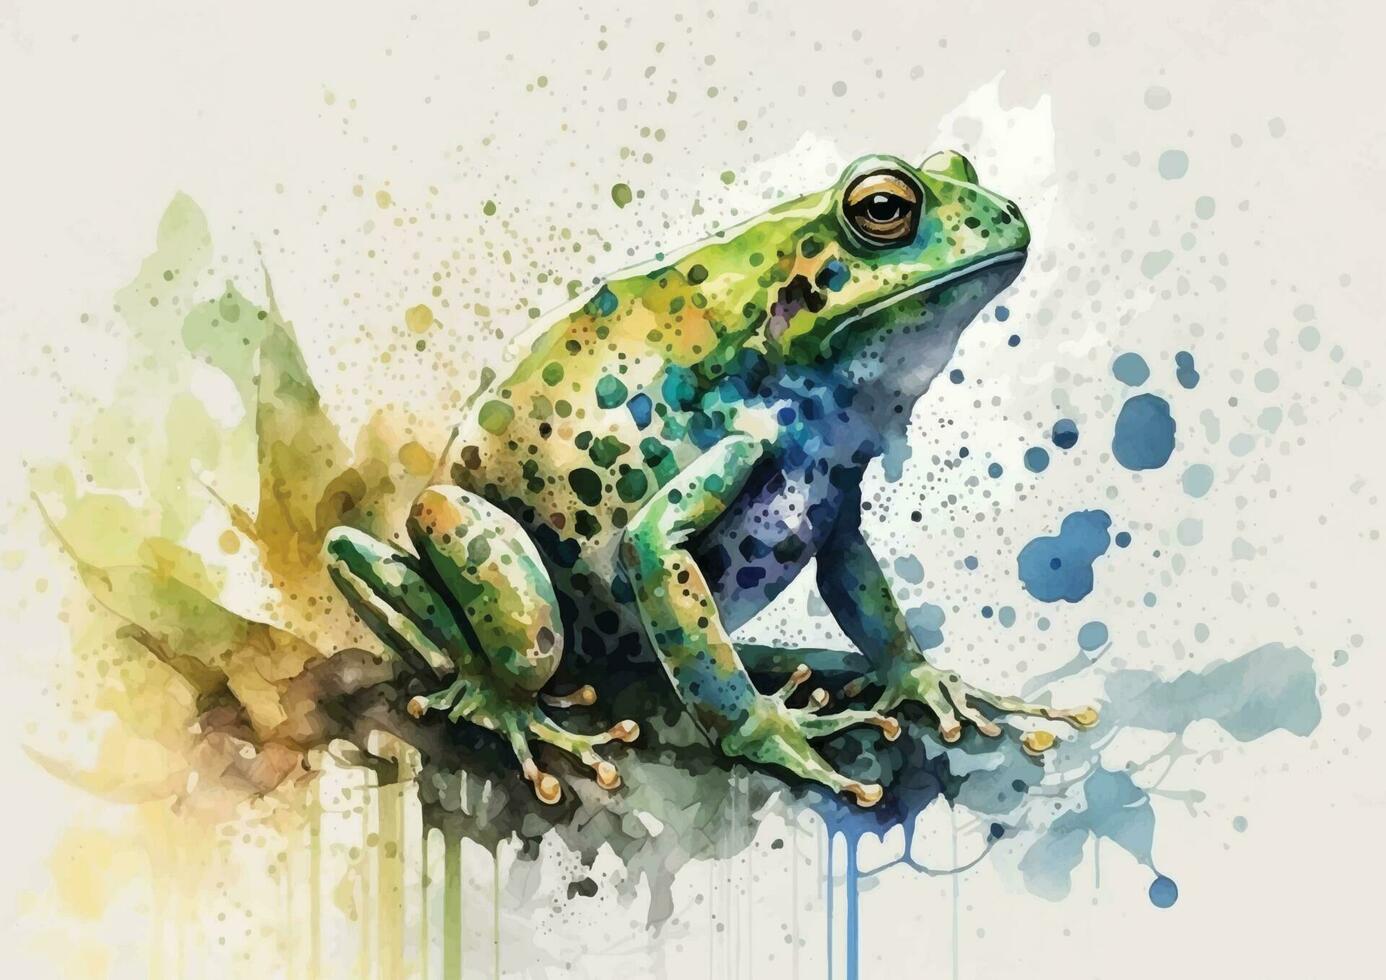 erfarenhet de glädje av natur med dessa nyckfull vattenfärg vektor illustrationer av grodor och deras miljö